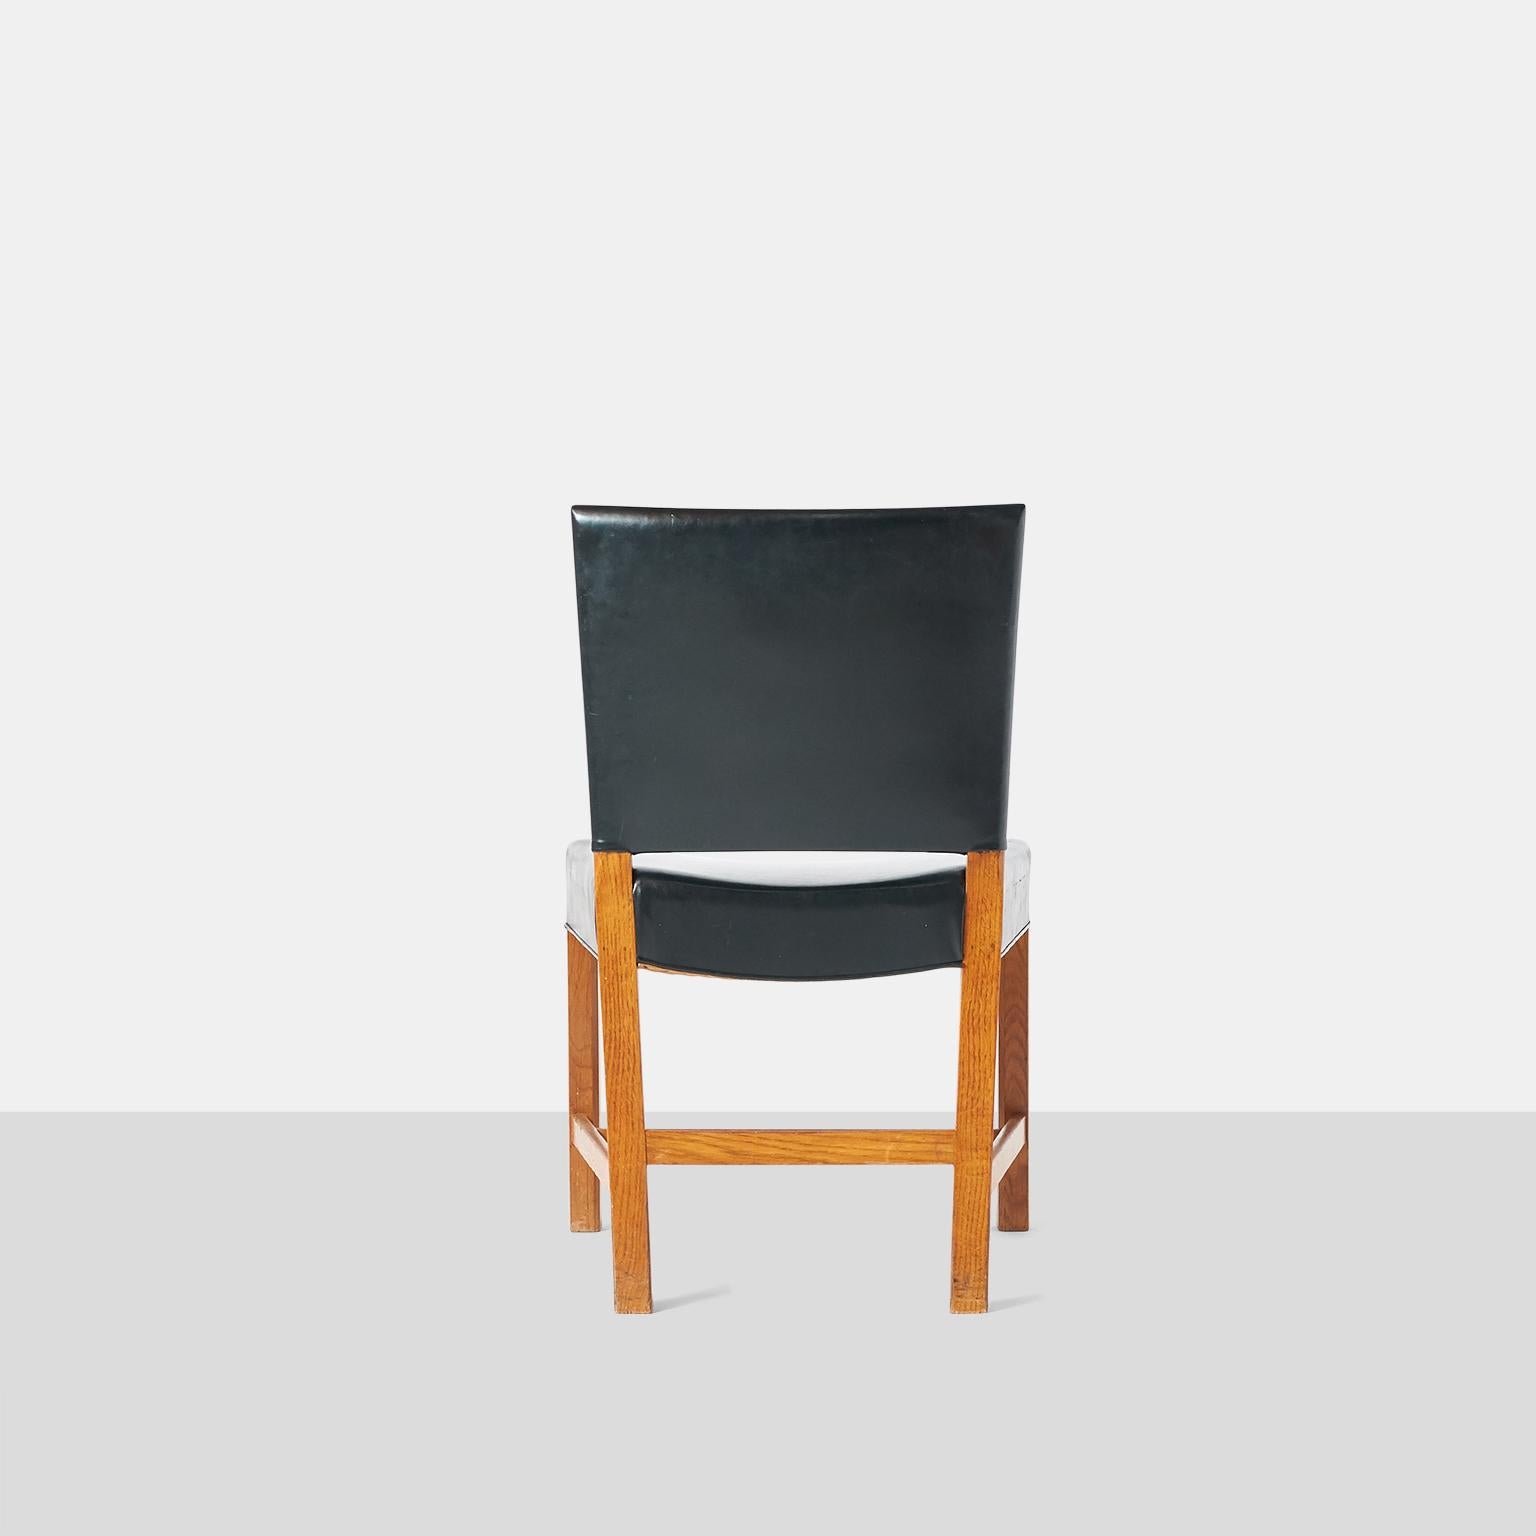 Scandinavian Modern “The Red Chair” by Kaare Klint